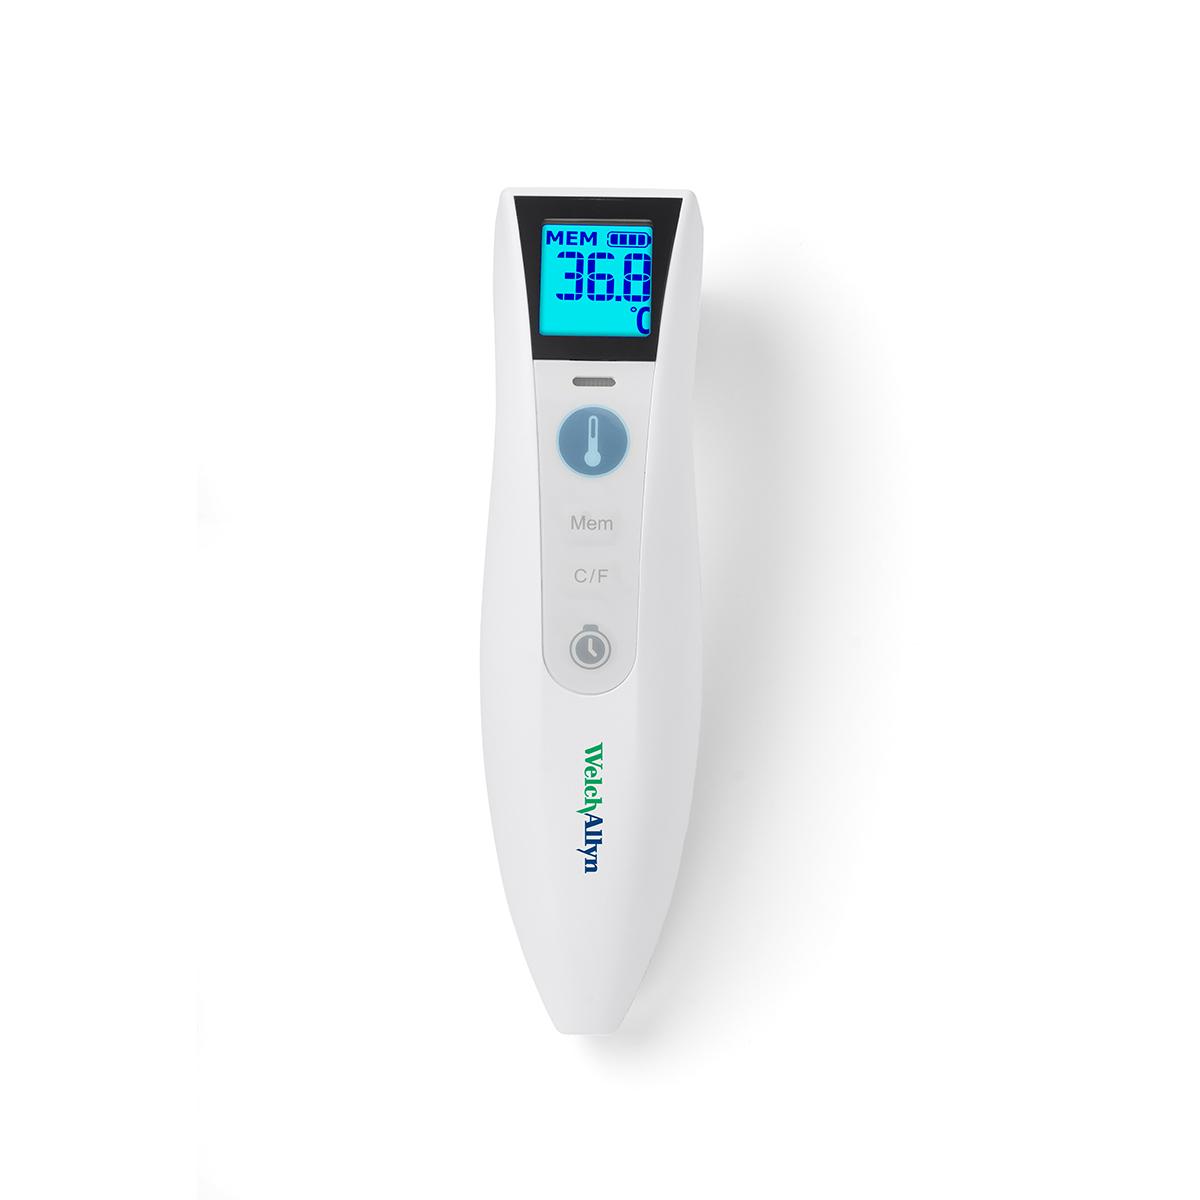 Das Welch Allyn CareTemp Thermometer zur berührungslosen Messung ist weiß und verfügt über einen hellblauen digitalen Anzeigebildschirm